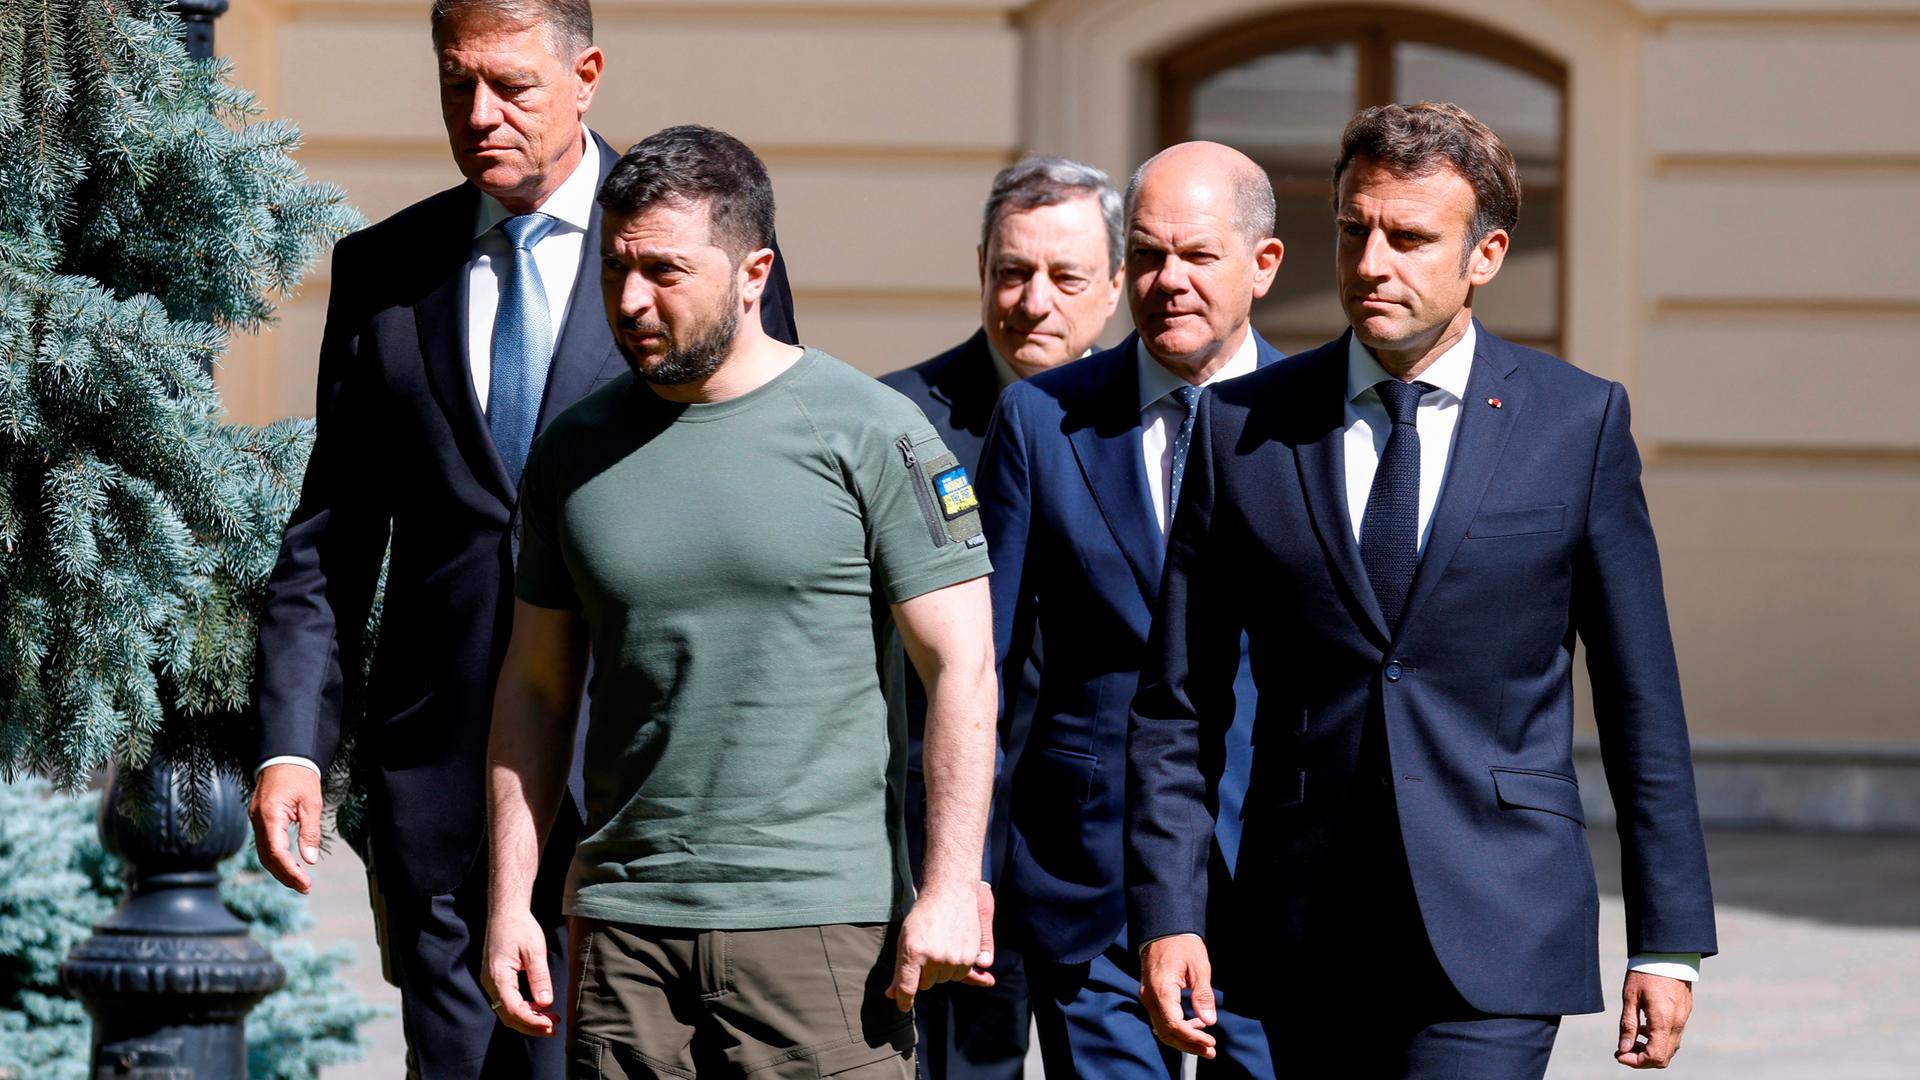 Frankreichs Präsident Emmanuel Macron, der rumänische Präsident Klaus Johannis, Italiens Premierminister Mario Draghi und Bundeskanzler Olaf Scholz, alle in Anzug, stehen mit Präsident Wolodimir Selenski, in Militärkleidung, zusammen.